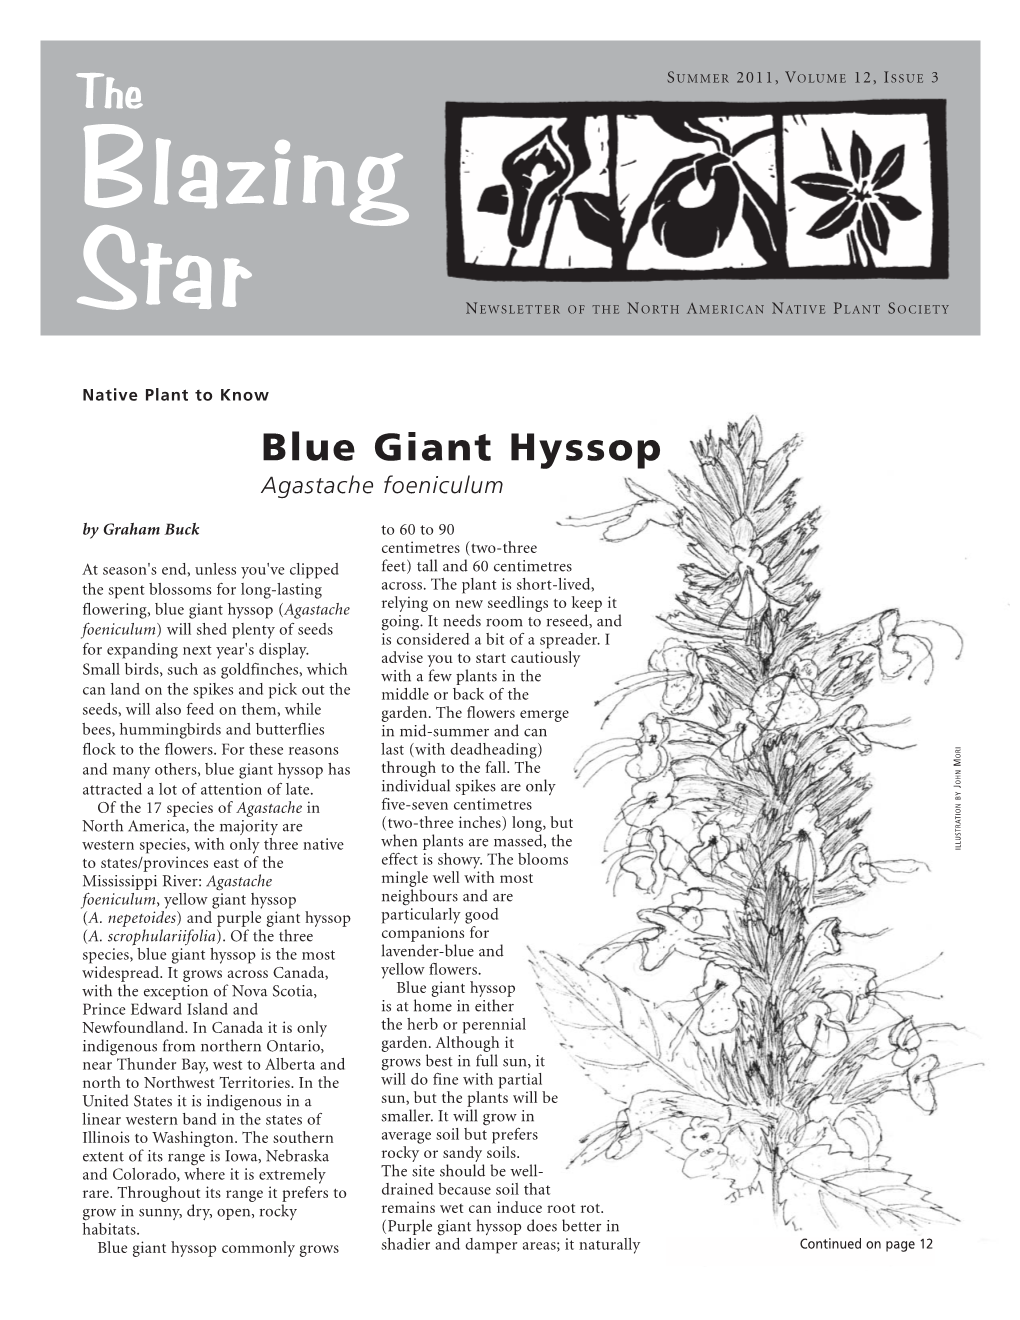 Blue Giant Hyssop